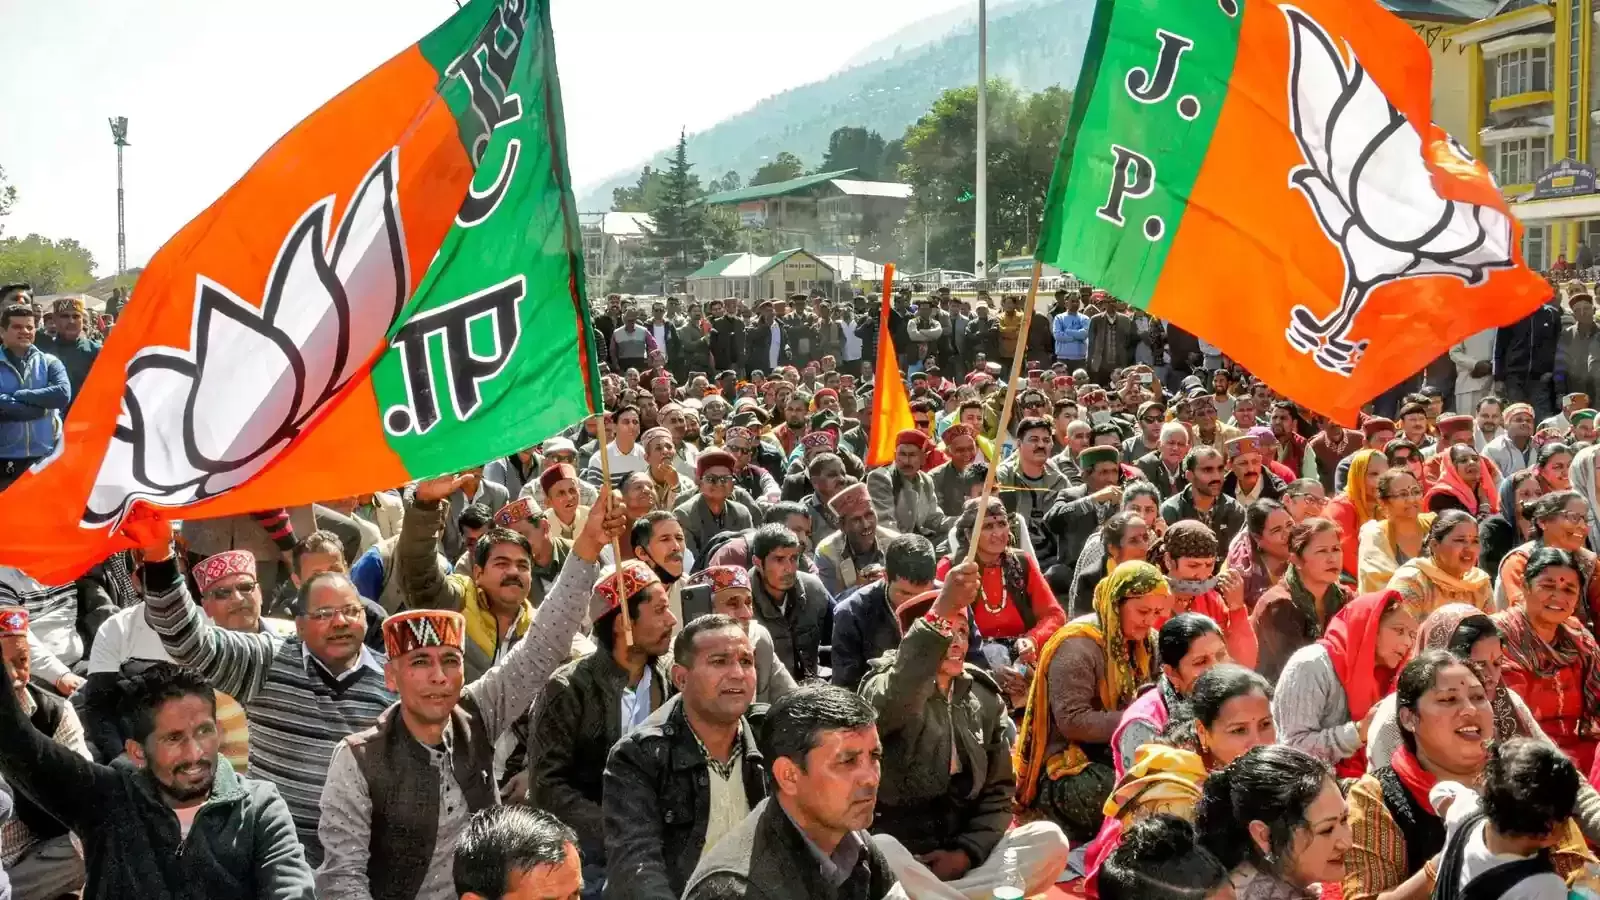 Factionalism, infighting undermined BJP in Himachal Pradesh: report